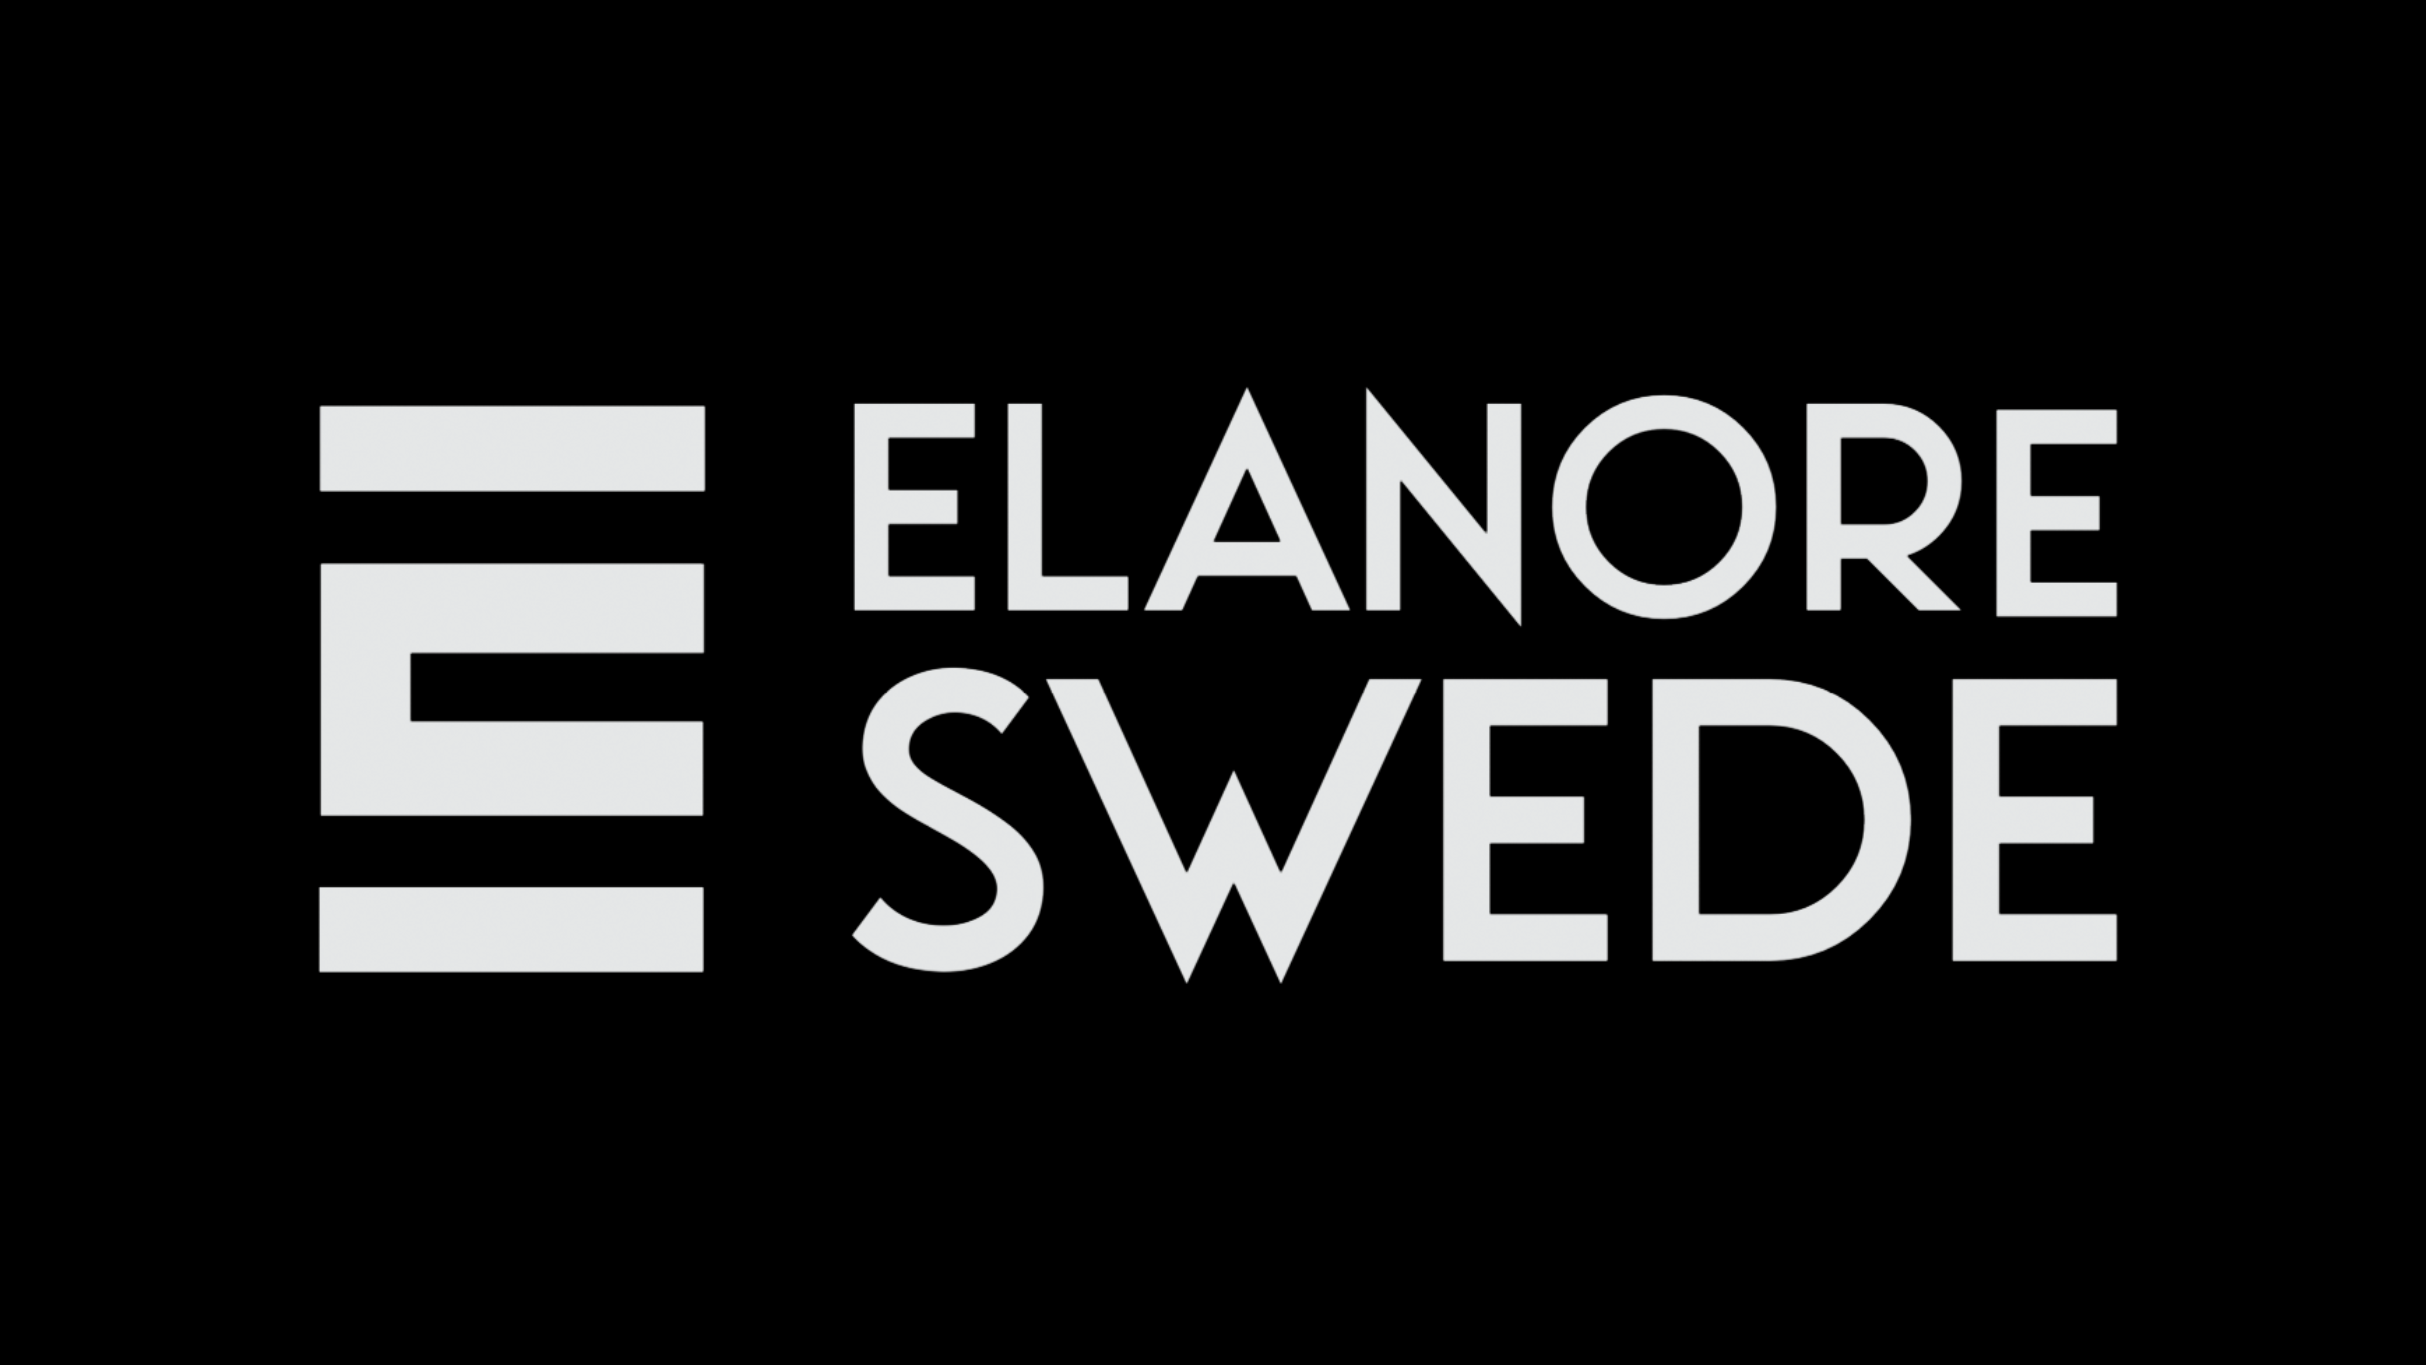 Elanore Swede presale information on freepresalepasswords.com